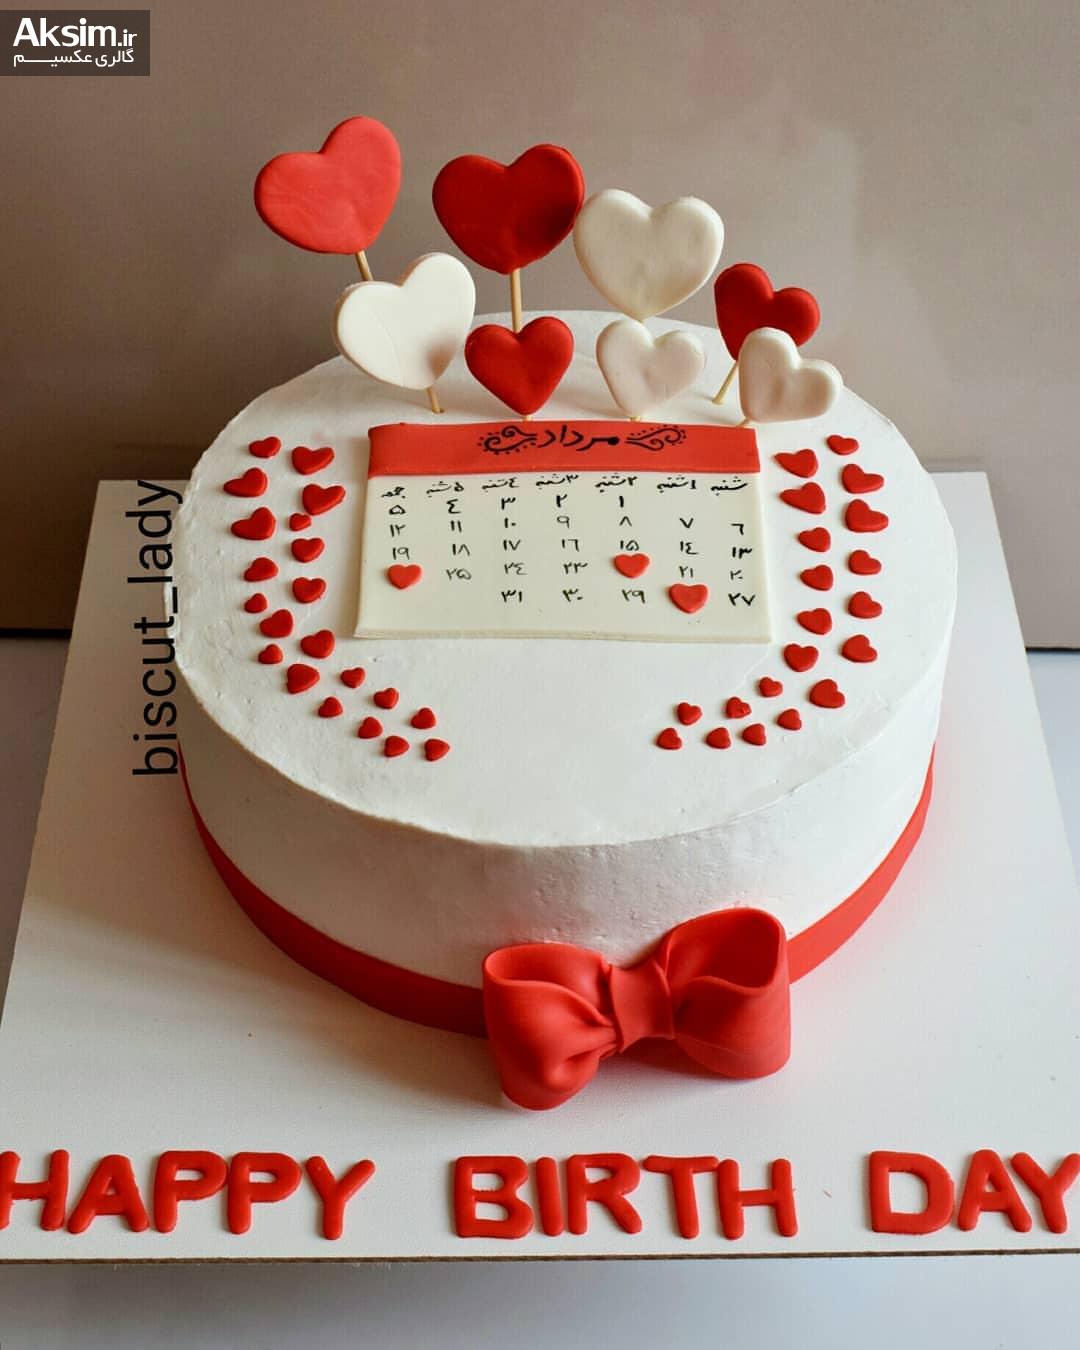 کیک تولد خاص عاشقانه
